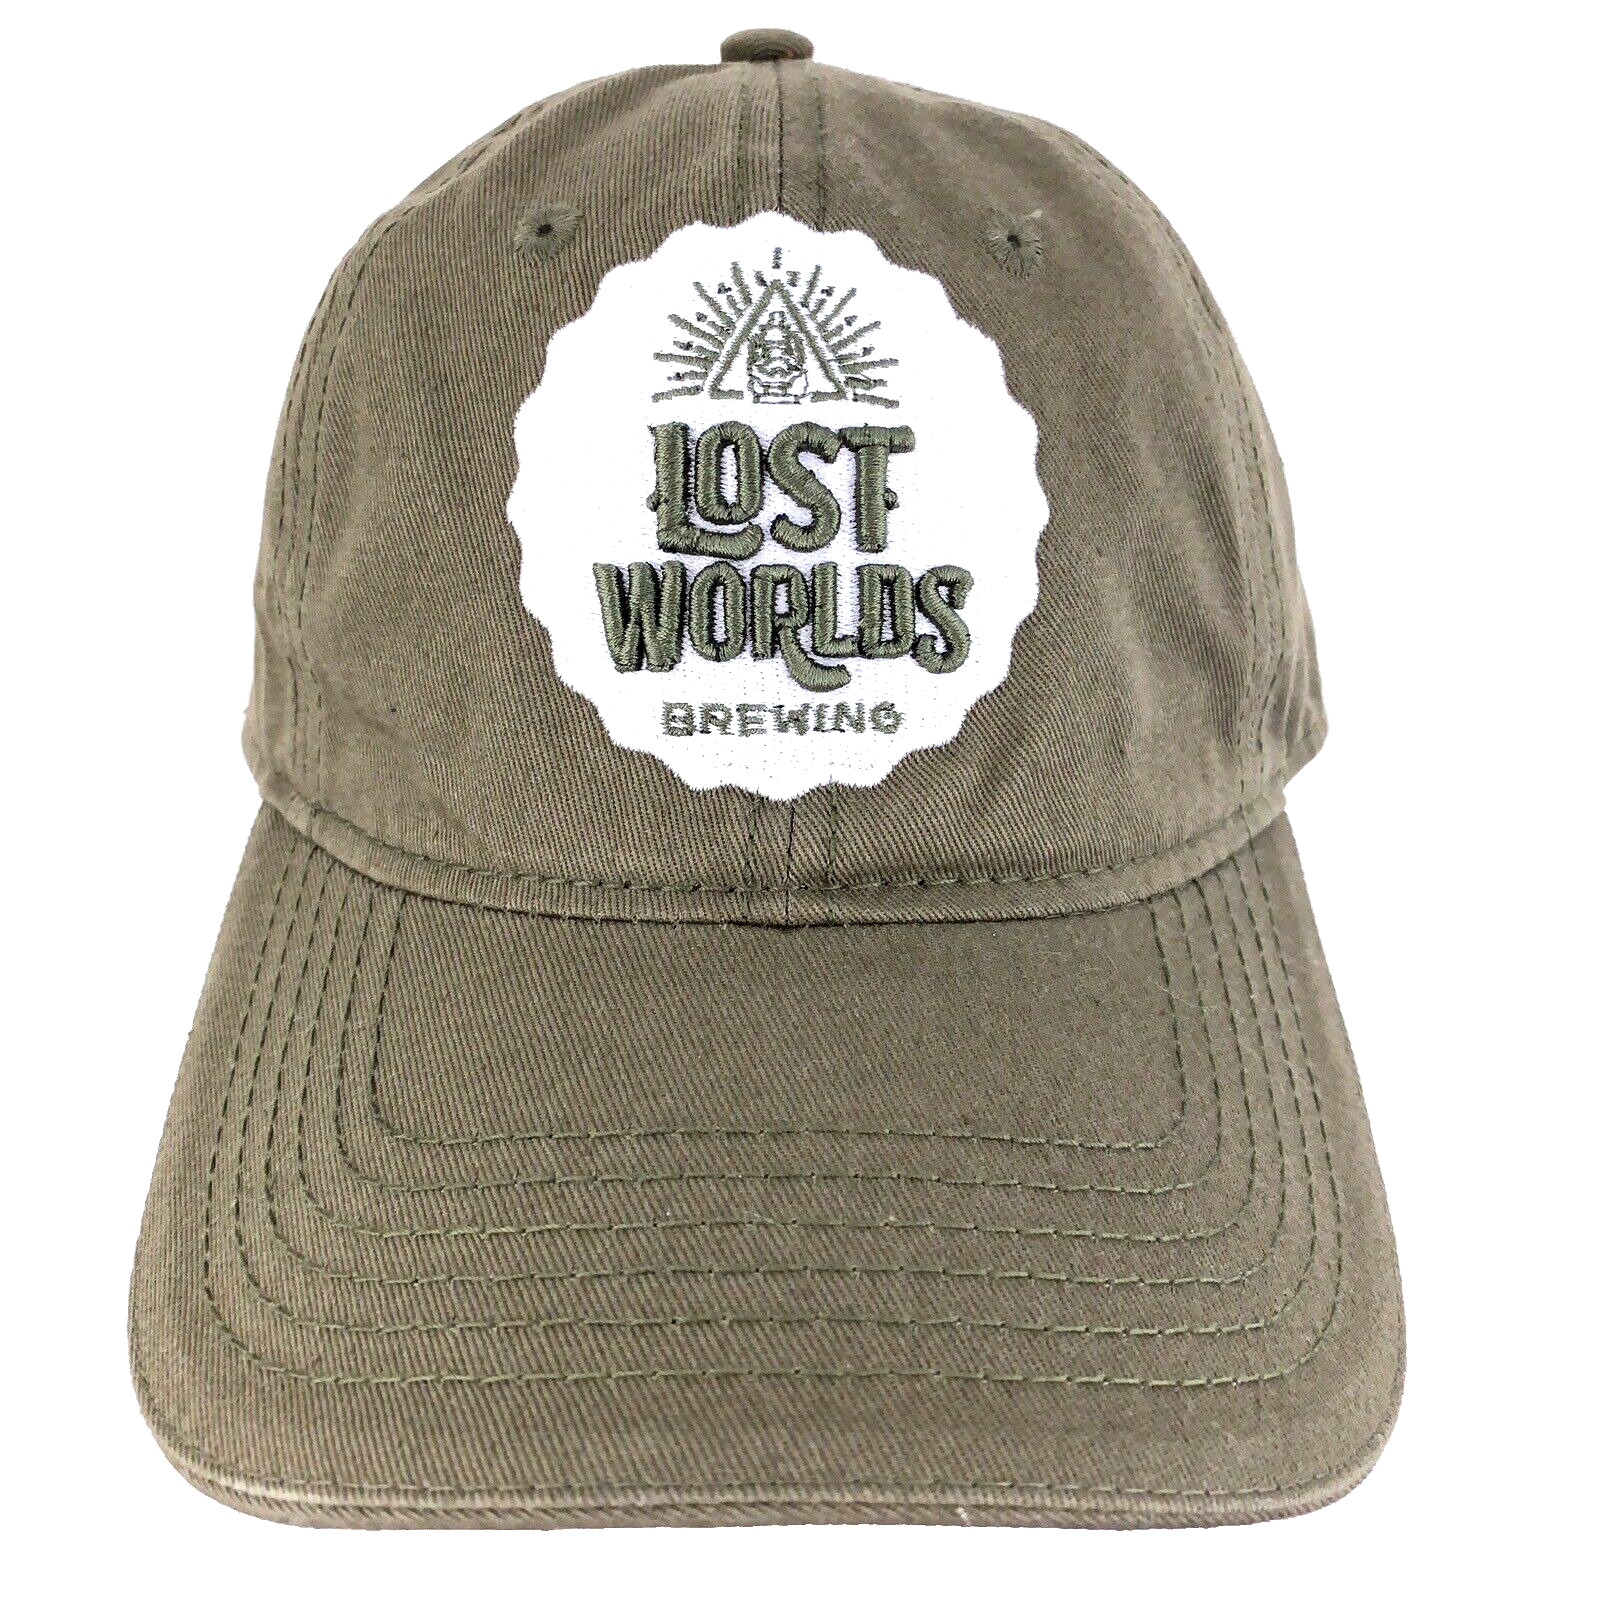 Lost Worlds Brewing Hat Beer Script Logo Strap Back Baseball Adjustable Dad Cap